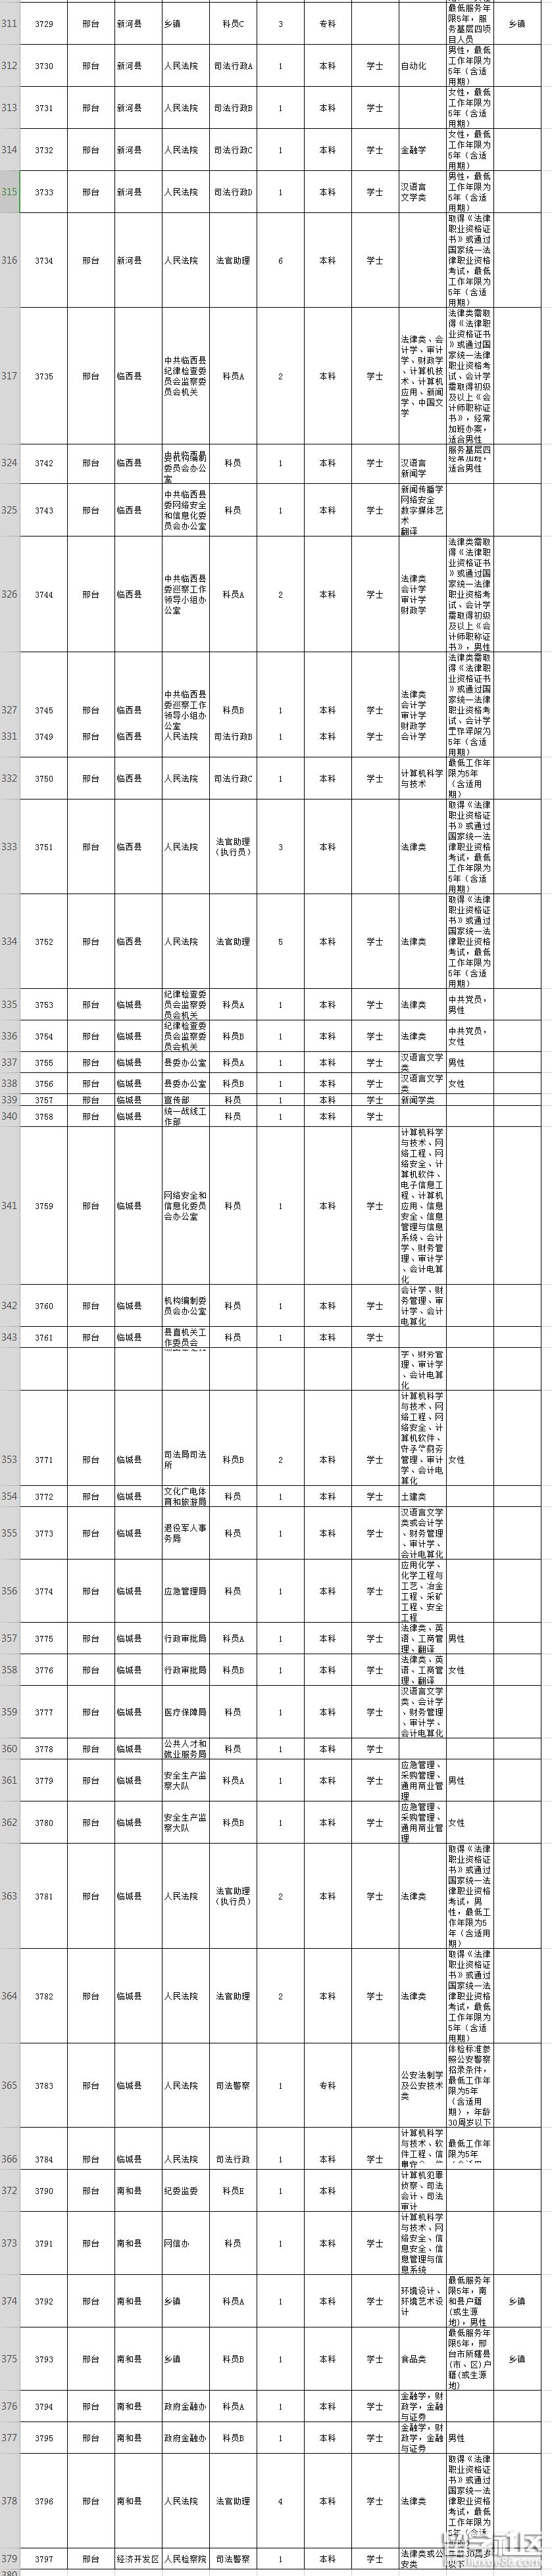 2019年河北省公务员考试职位表(邢台市)